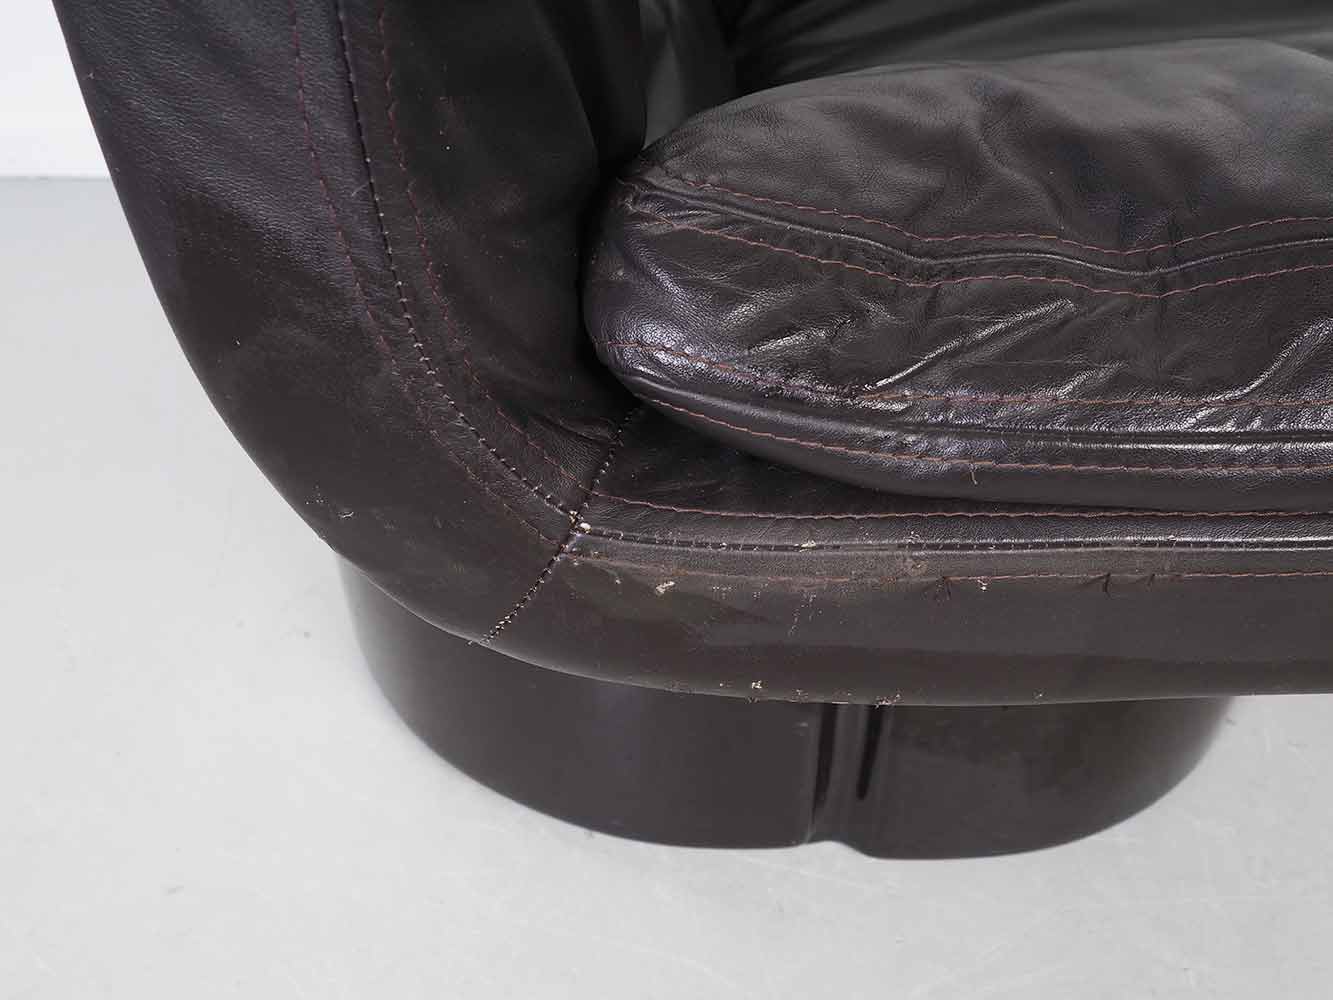 IL Poltrone lounge stoel - Ammanati & Vitelli - Comfort